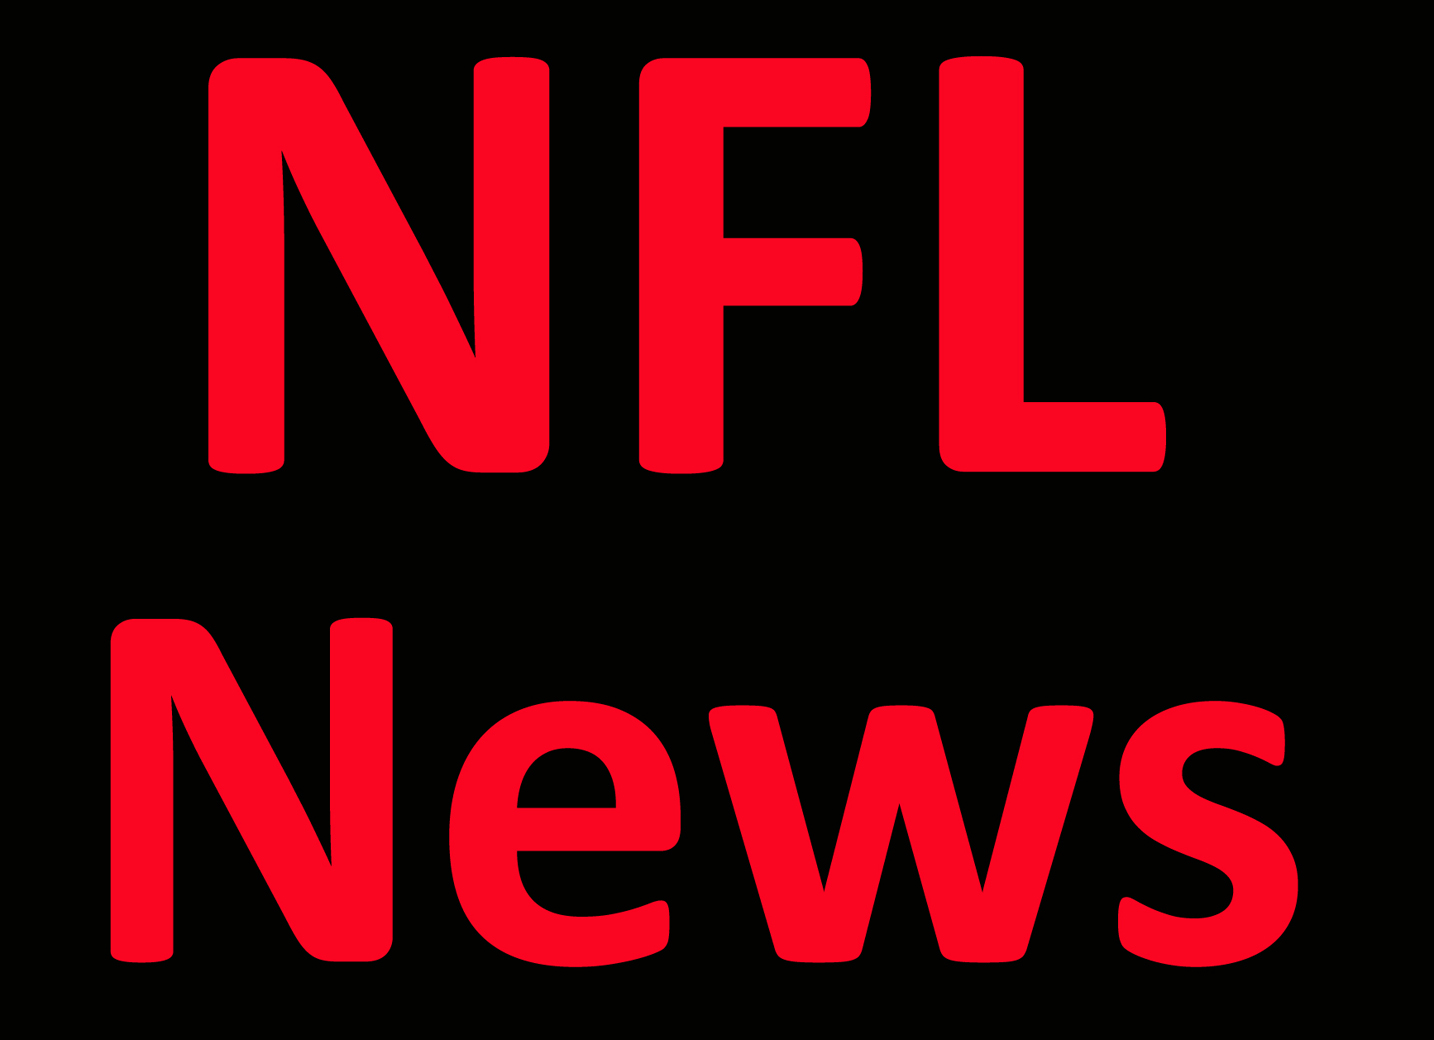 NFL News: Aidan Hutchinson says childhood Patriots fandom ‘no good’ ahead of matchup Per Report